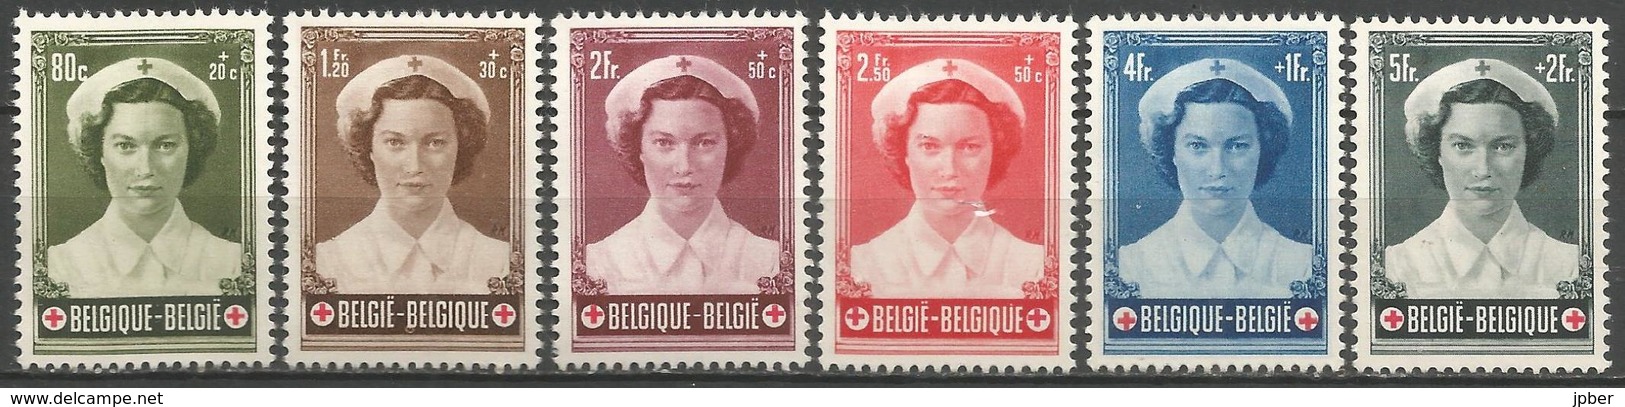 (E058) BELGIQUE - N°912à917 * - Croix-Rouge - Princesse Joséphine -Charlotte - Neufs